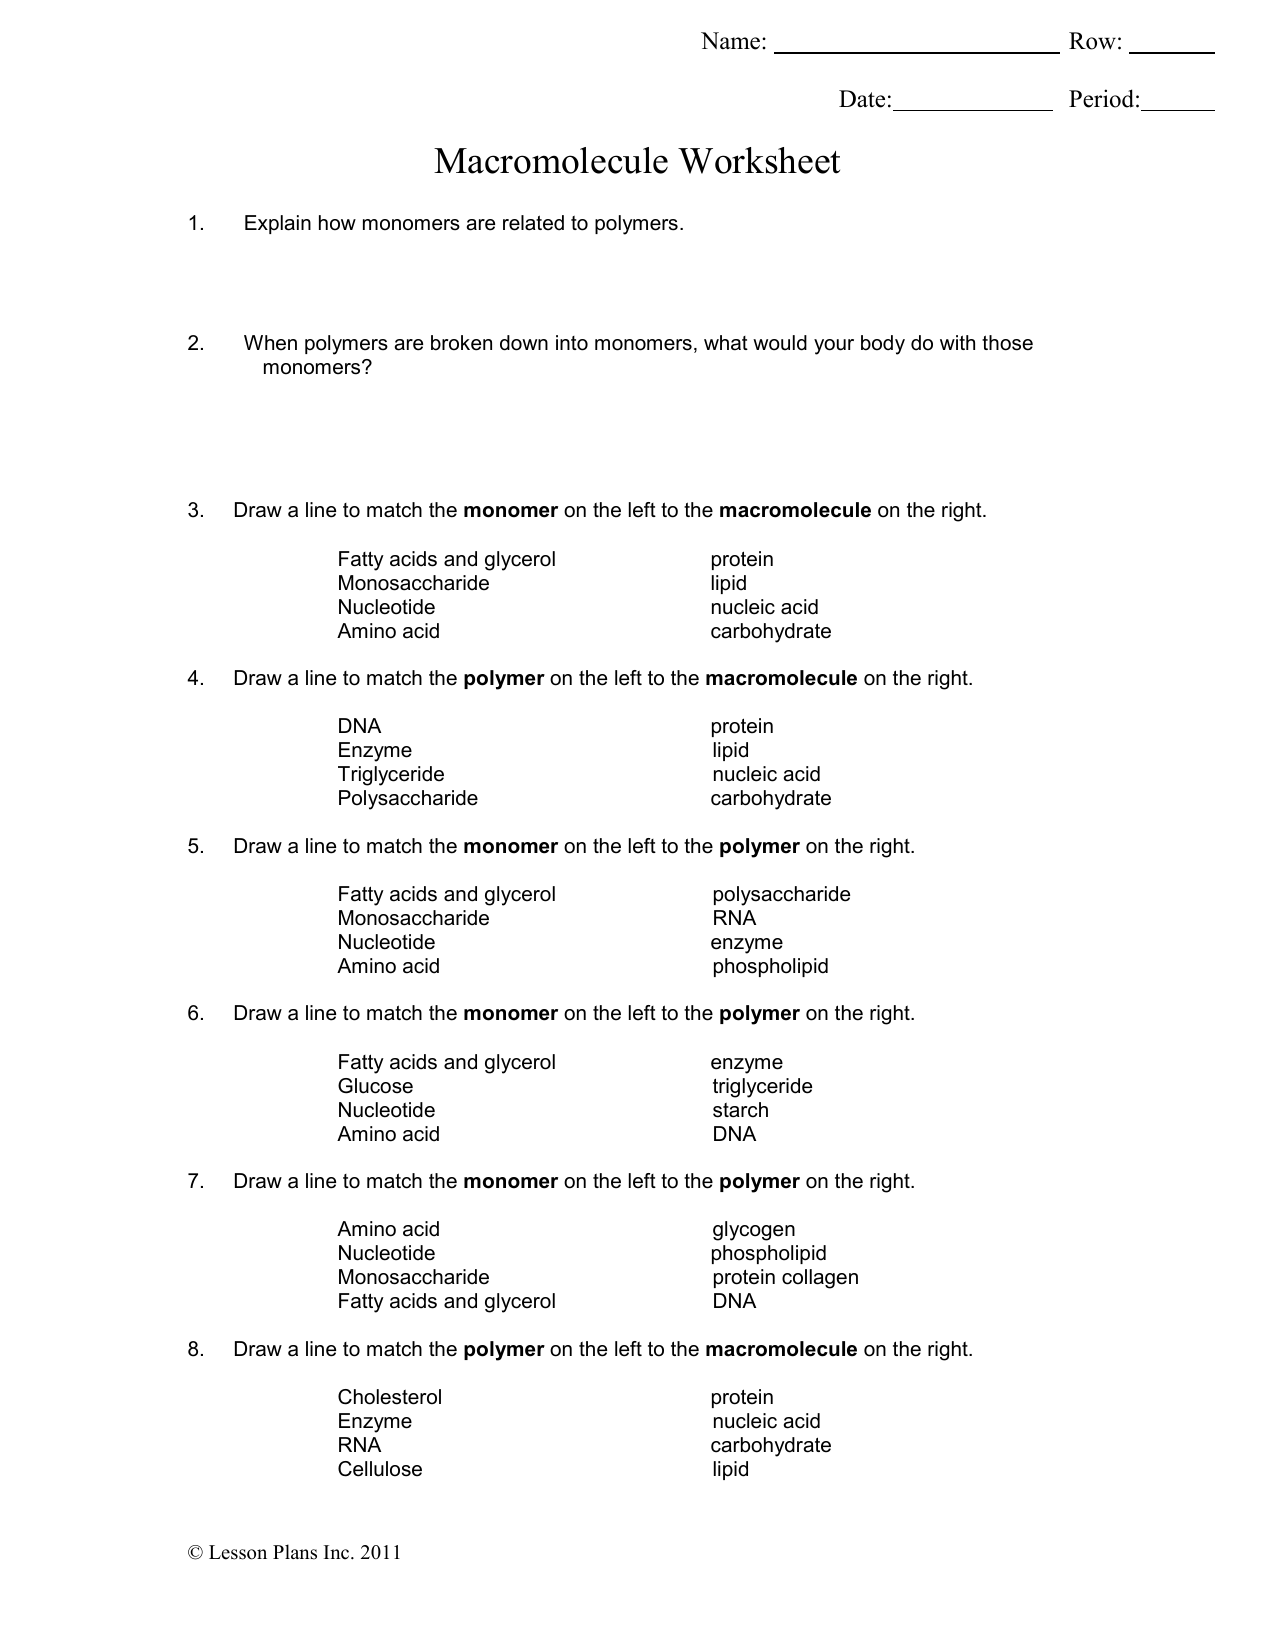 Macromolecule Worksheet Regarding Macromolecules Worksheet 2 Answers